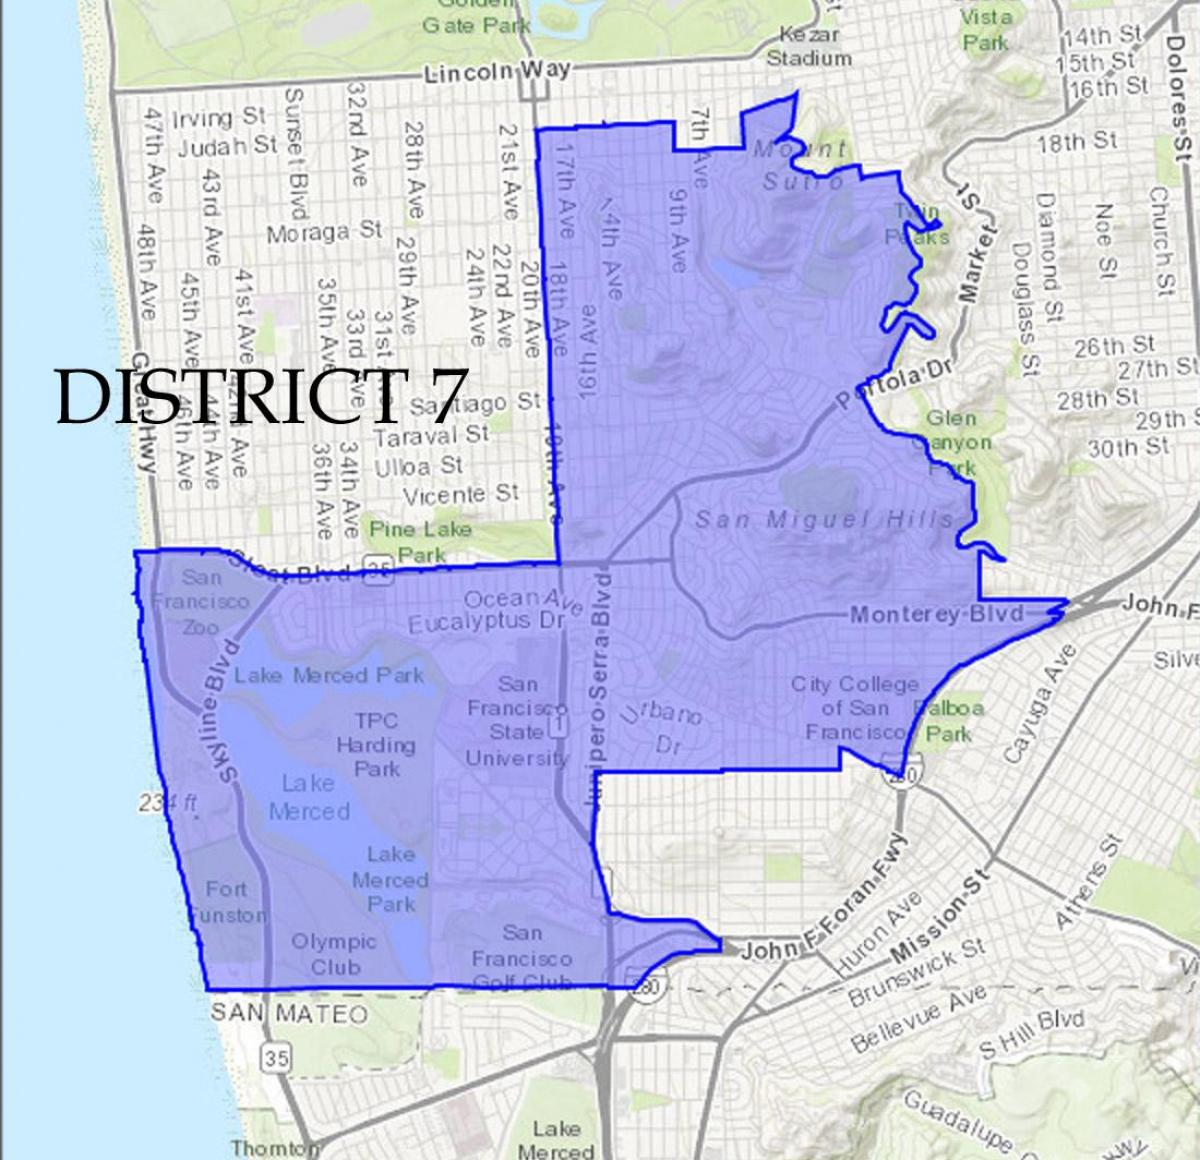 Mappa di San Francisco distretto 7 